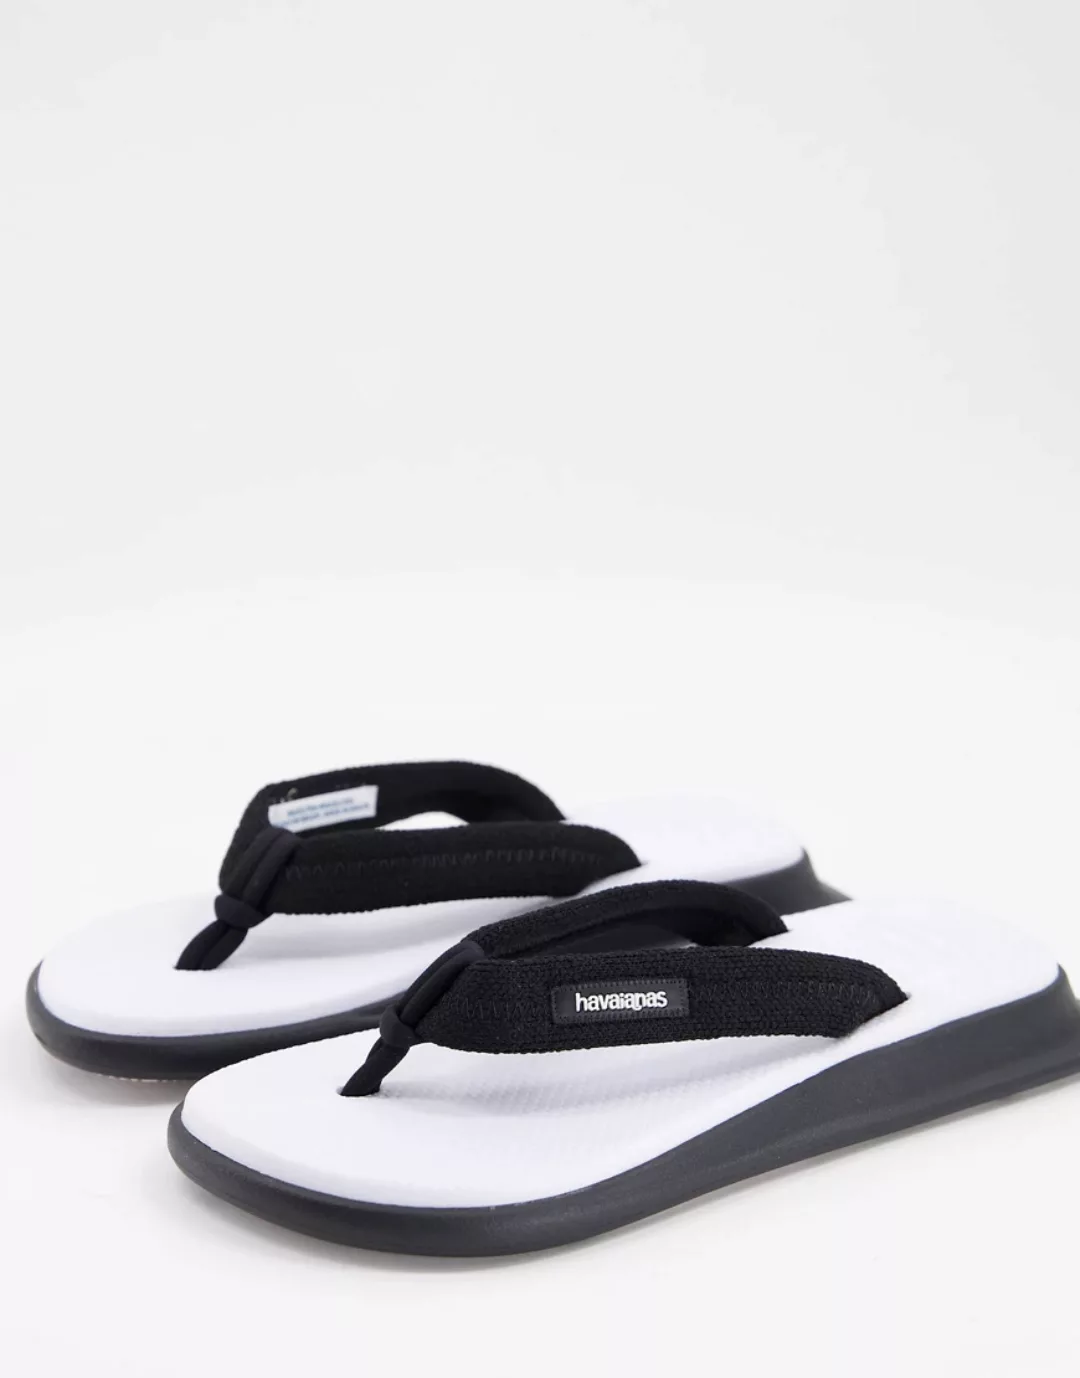 Havaianas Tradizori – Zehensteg-Sandalen mit eckiger Zehenpartie in Weiß ge günstig online kaufen